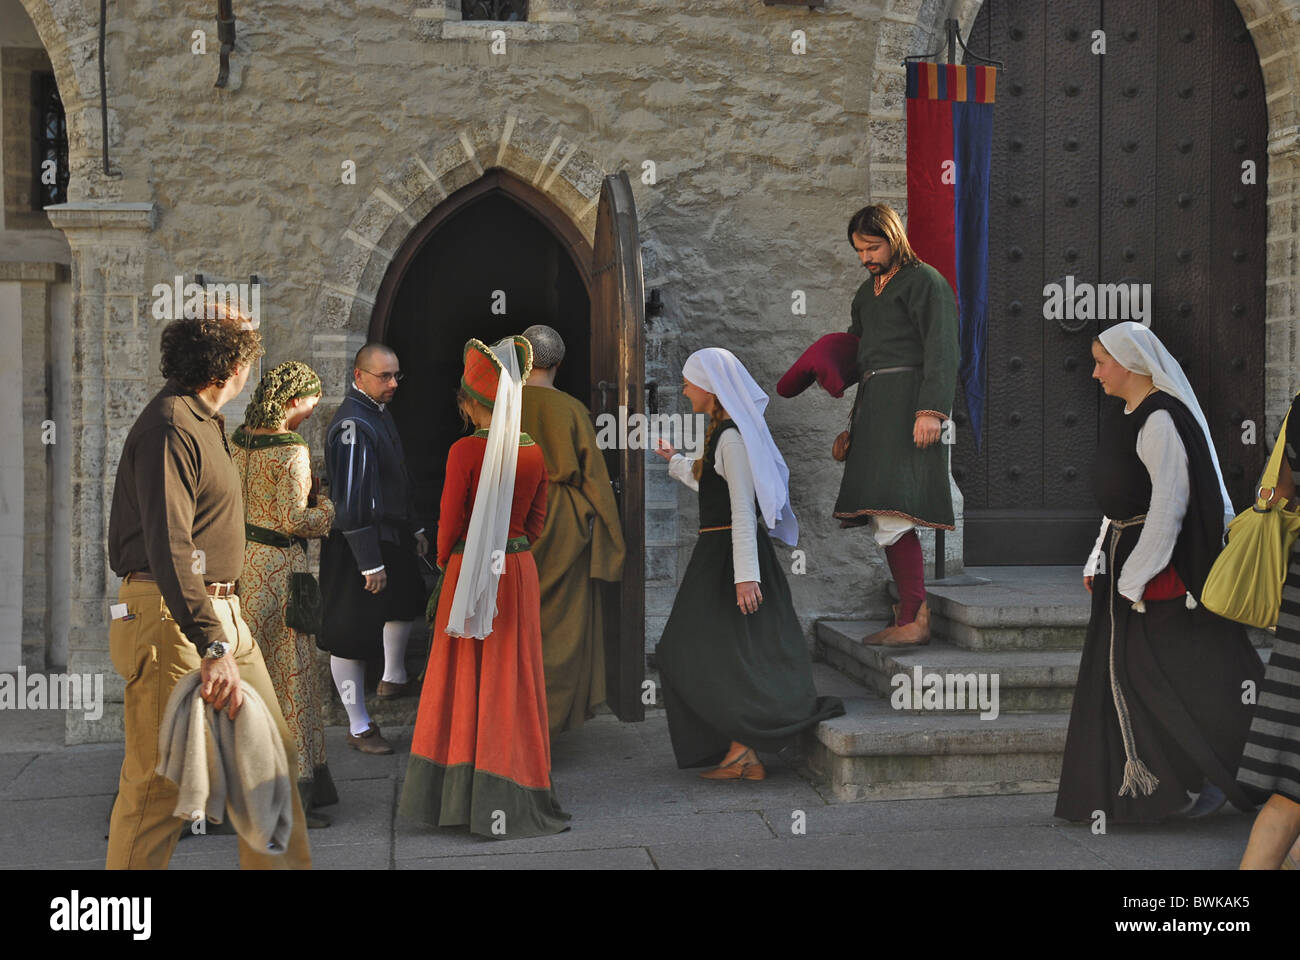 Les personnes en costumes médiévaux au marché en face de la mairie, Tallinn, Estonie, Europe Banque D'Images